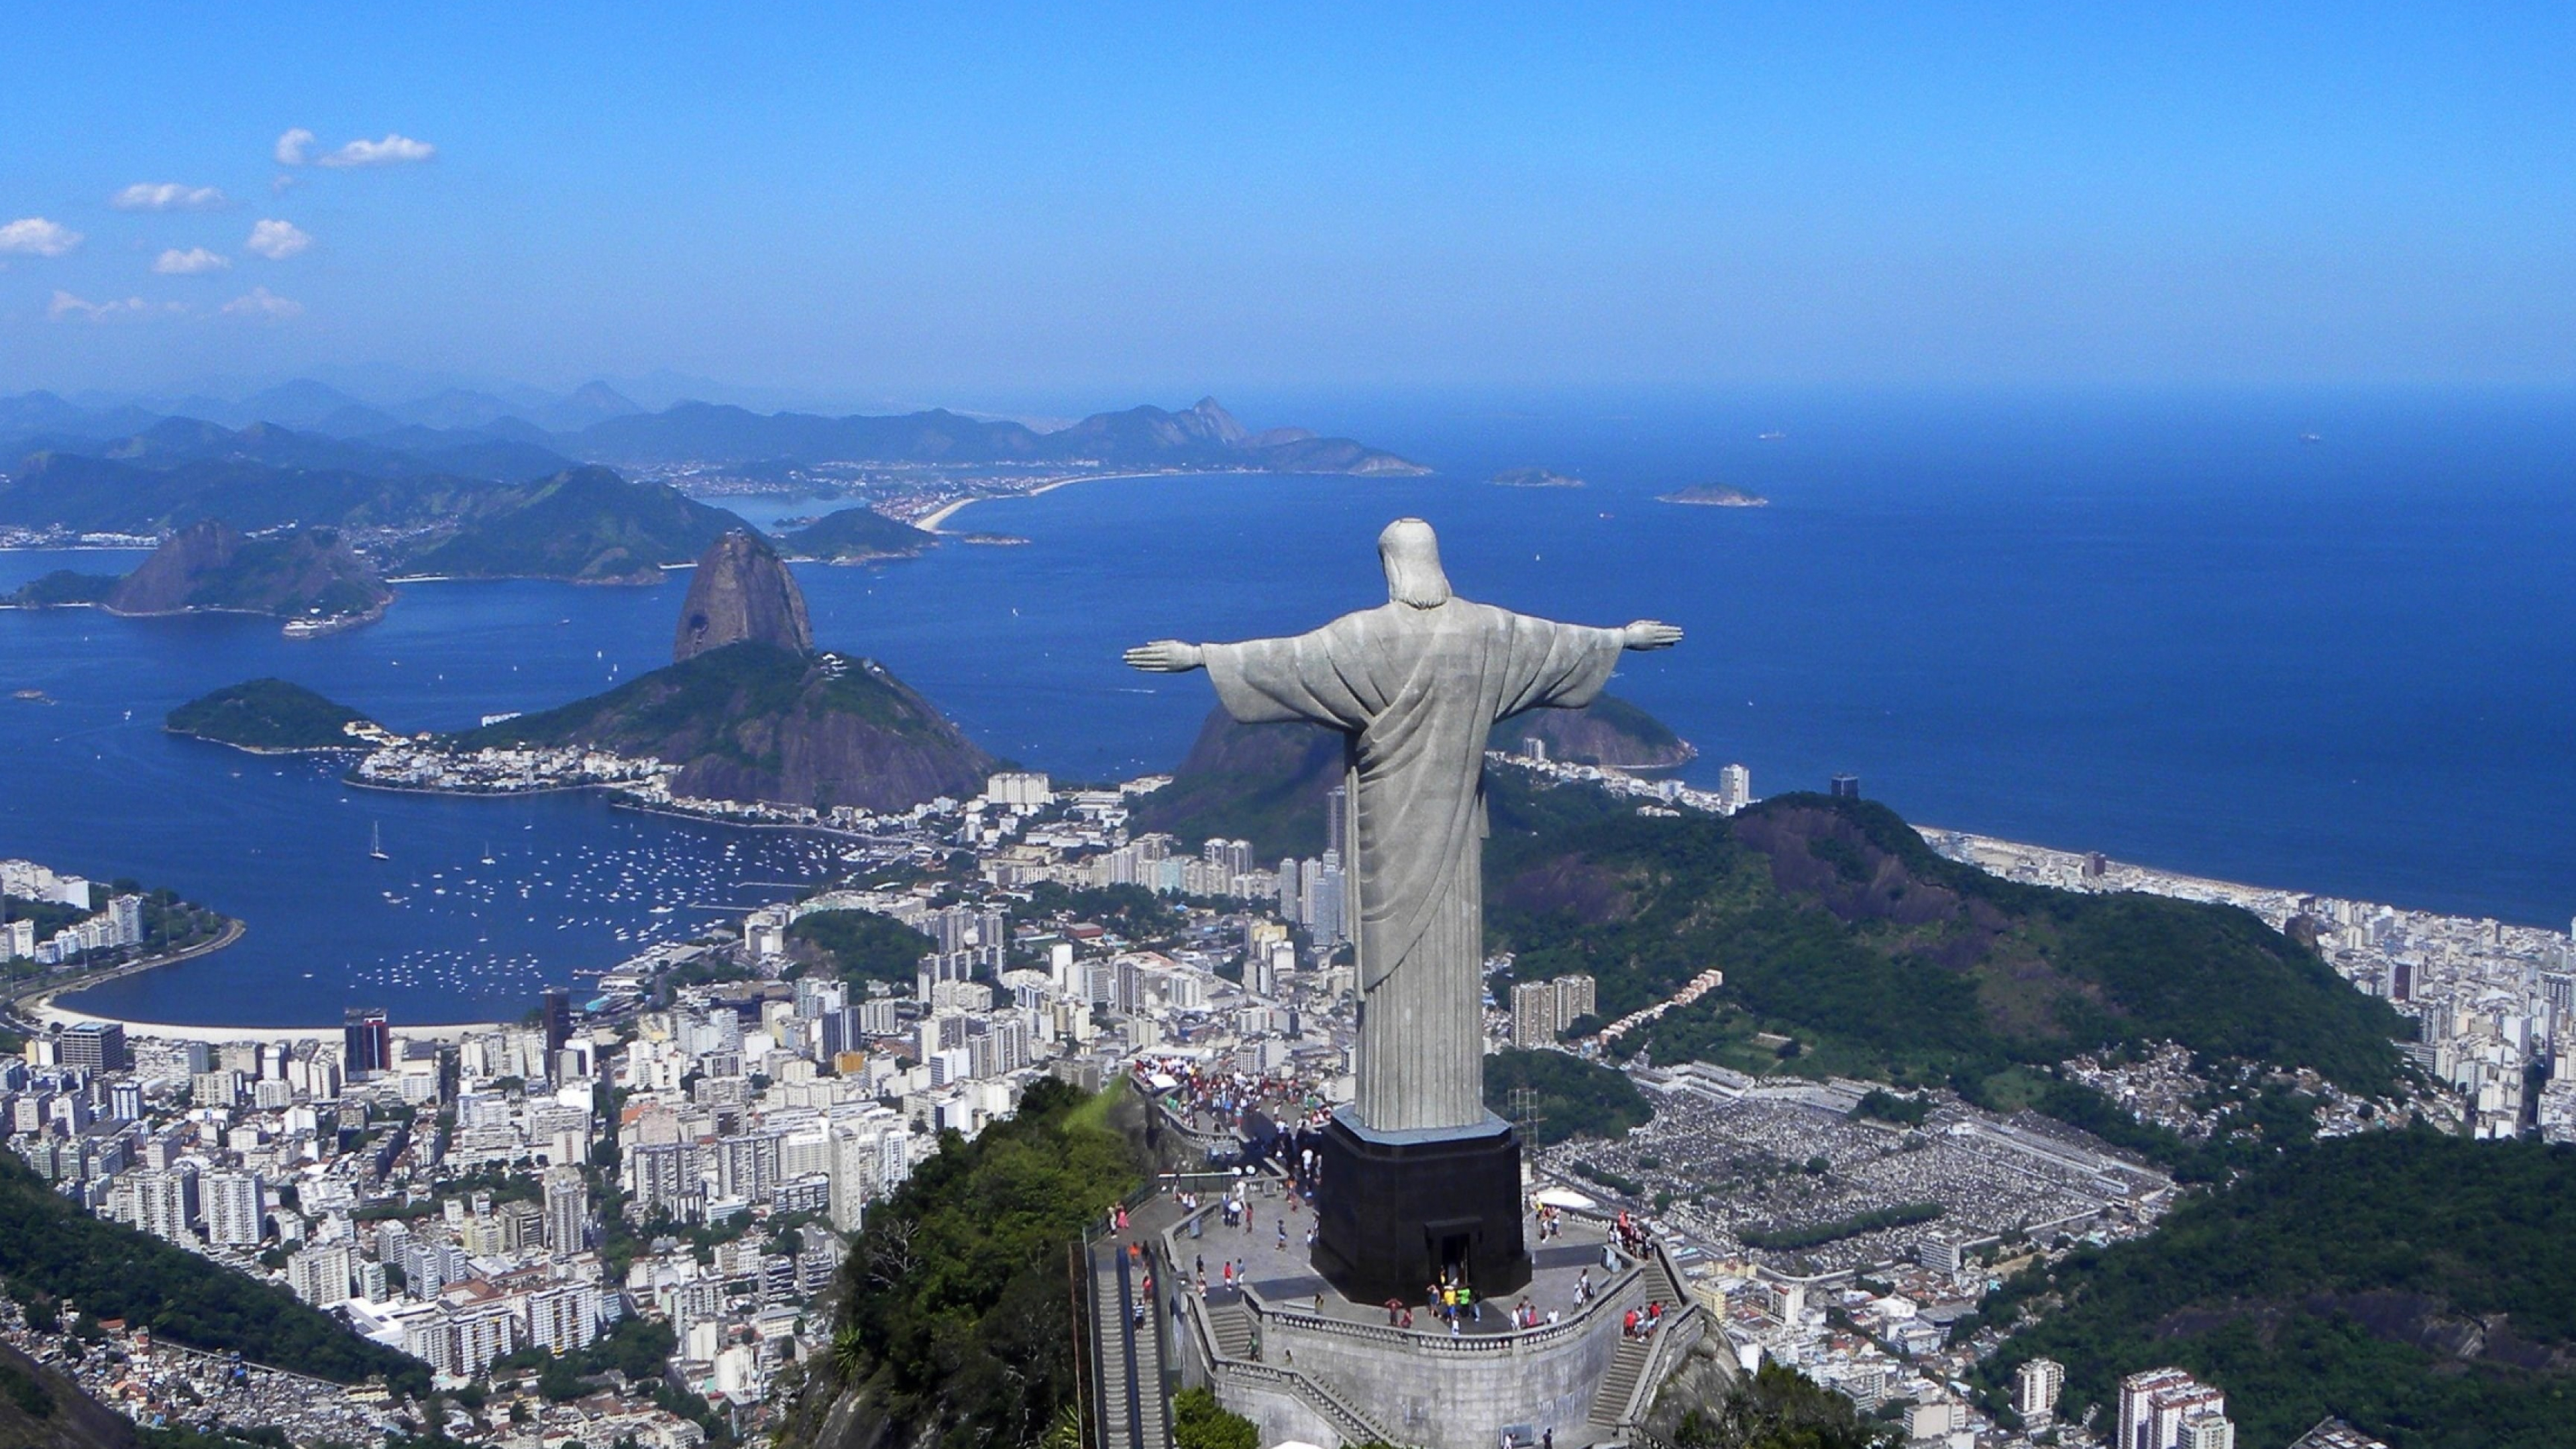 Christ the Redeemer, 4K wallpaper, High-definition image, Rio de Janeiro wonder, 3840x2160 4K Desktop